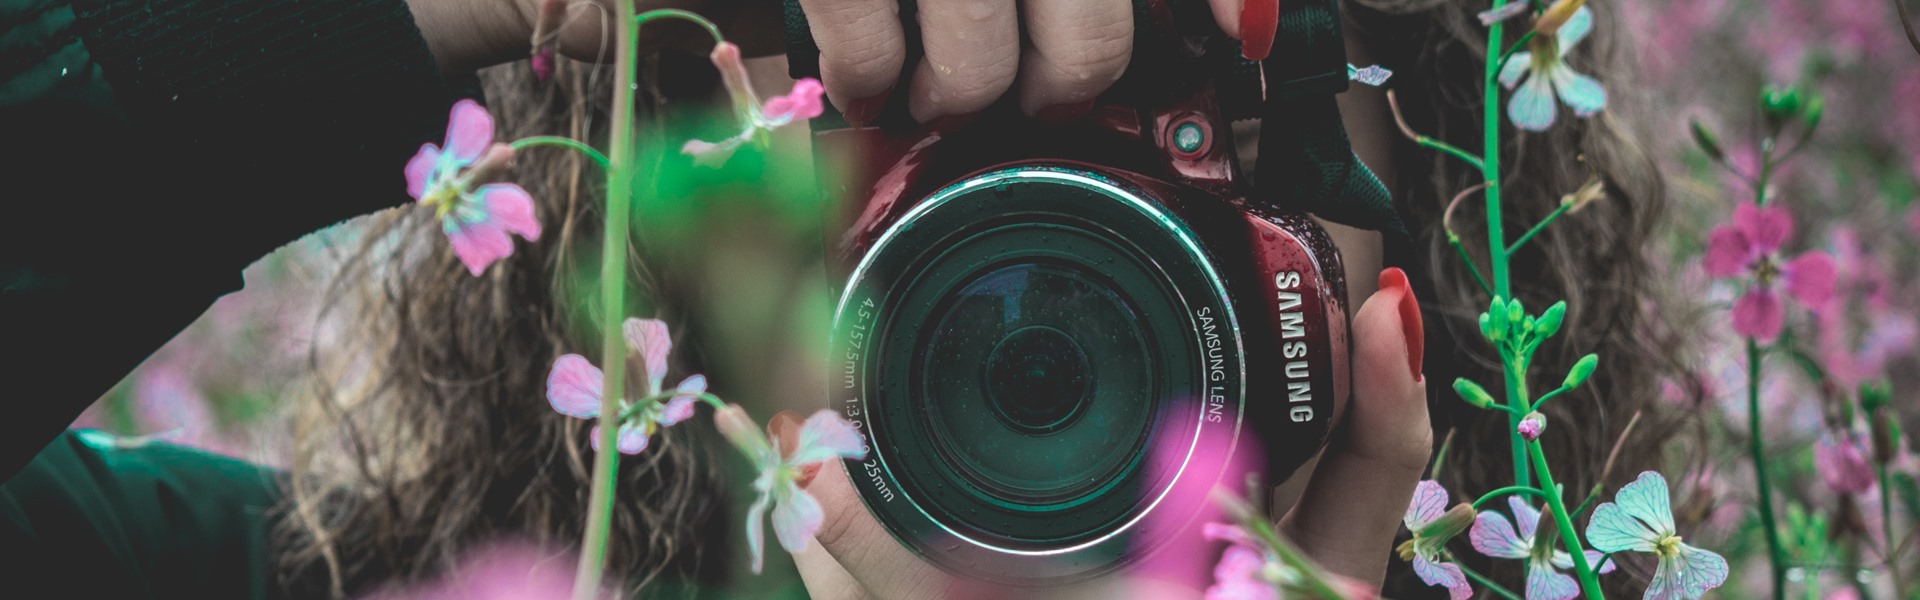 Как стать фотографом и начать зарабатывать